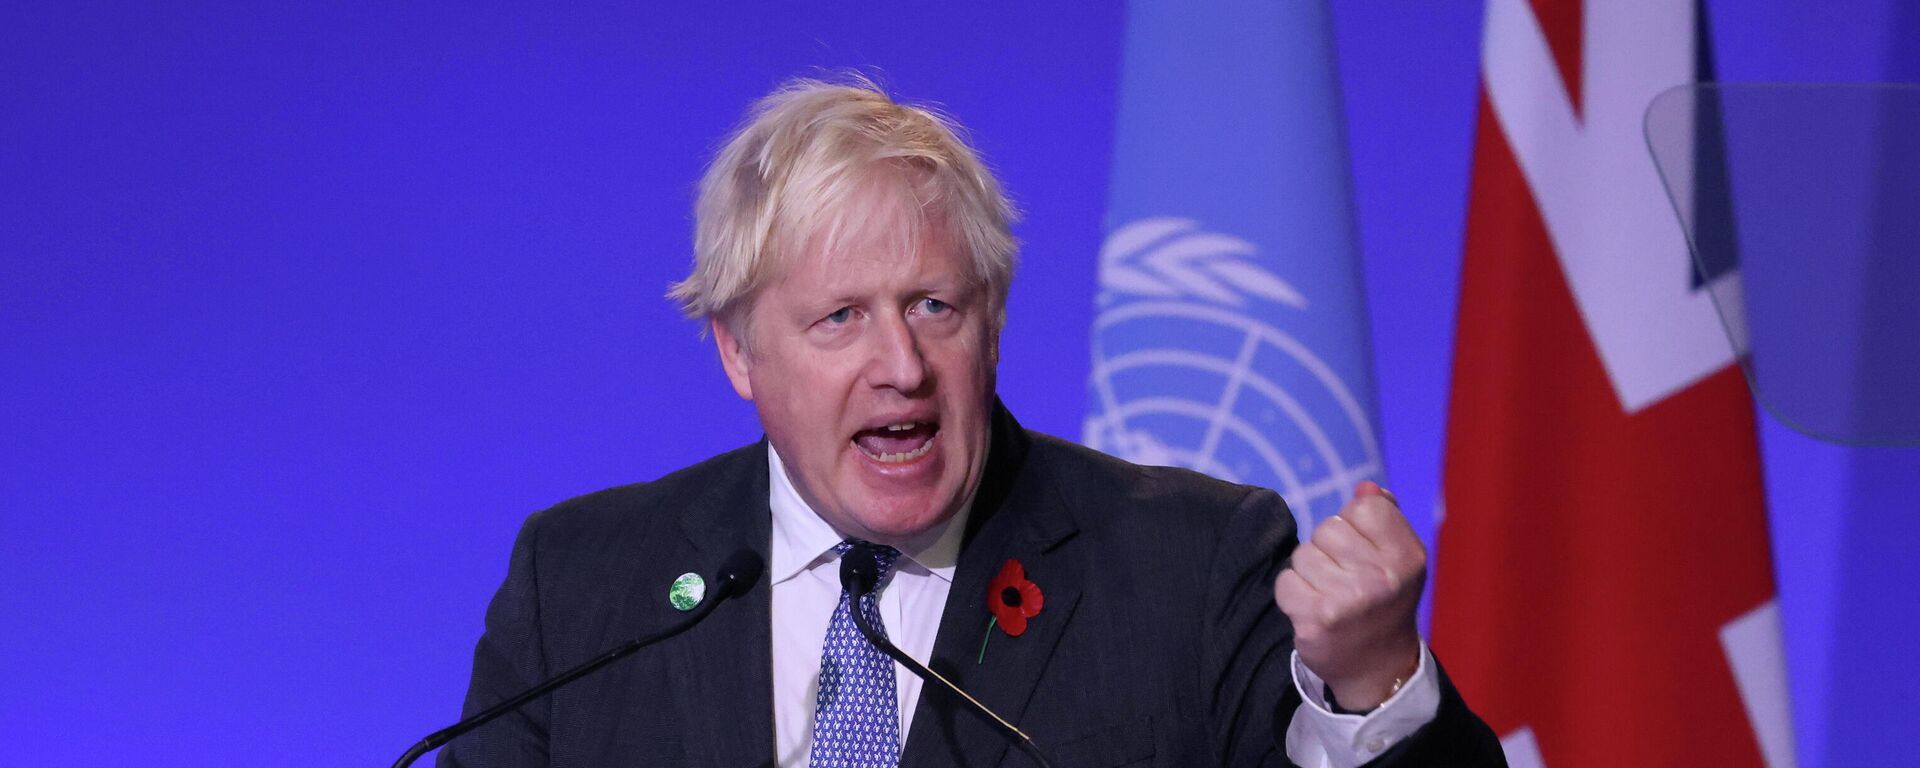 İskoçya'nın Glasgow kentinde düzenlenen BM İklim Değişikliği Çerçeve Sözleşmesi 26. Taraflar Konferansı Liderler Zirvesi (COP26) açılış töreninde konuşan Britanya Başbakanı Boris Johnson - Sputnik Türkiye, 1920, 01.11.2021